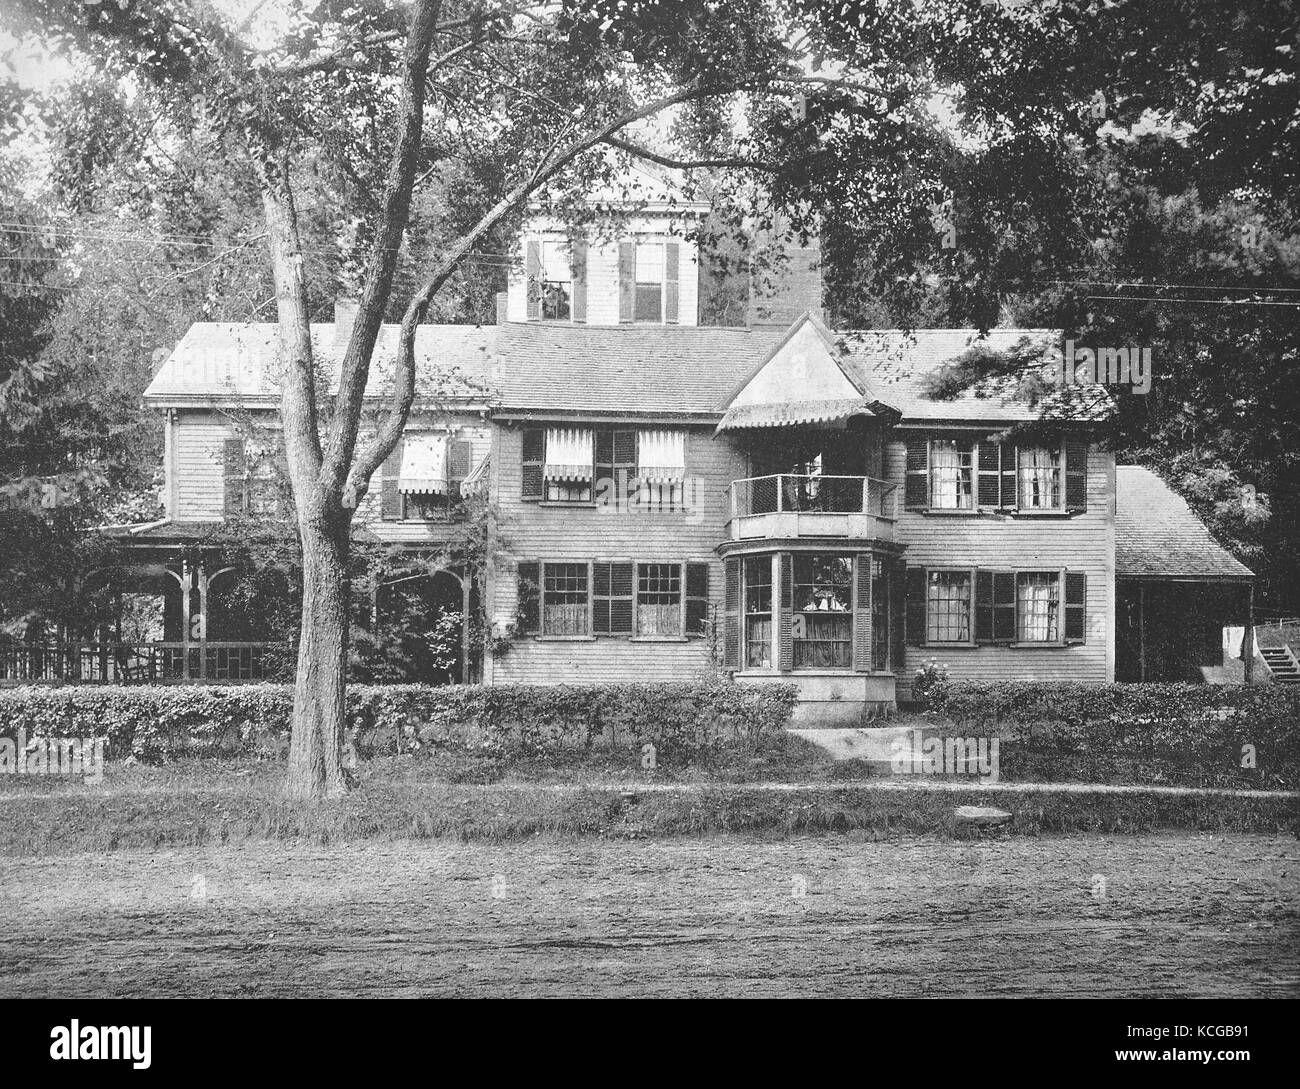 Vereinigte Staaten von Amerika, Staat von Massachusetts, die Hawthorn-House am Dorf von Concord, der Heimat von Nathaniel Hawthorne, war ein US-amerikanischer Schriftsteller, dunkle romantisch und Short story writer, digital verbesserte Reproduktion einer historischen Foto aus dem (geschätzten) Jahr 1899 Stockfoto